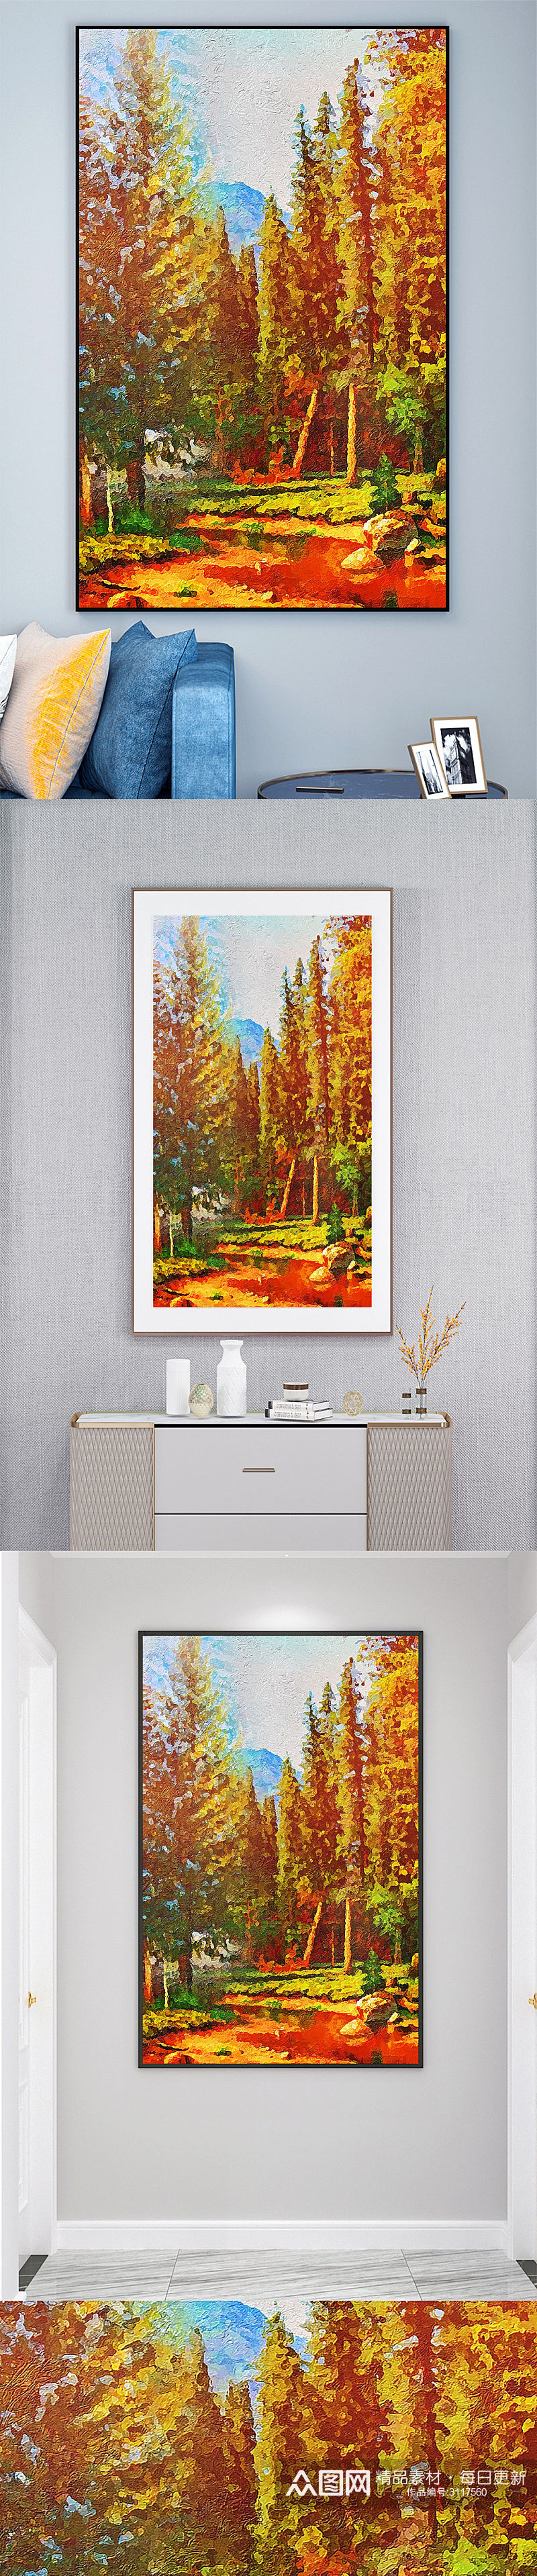 秋季油画风景壁画装饰画素材